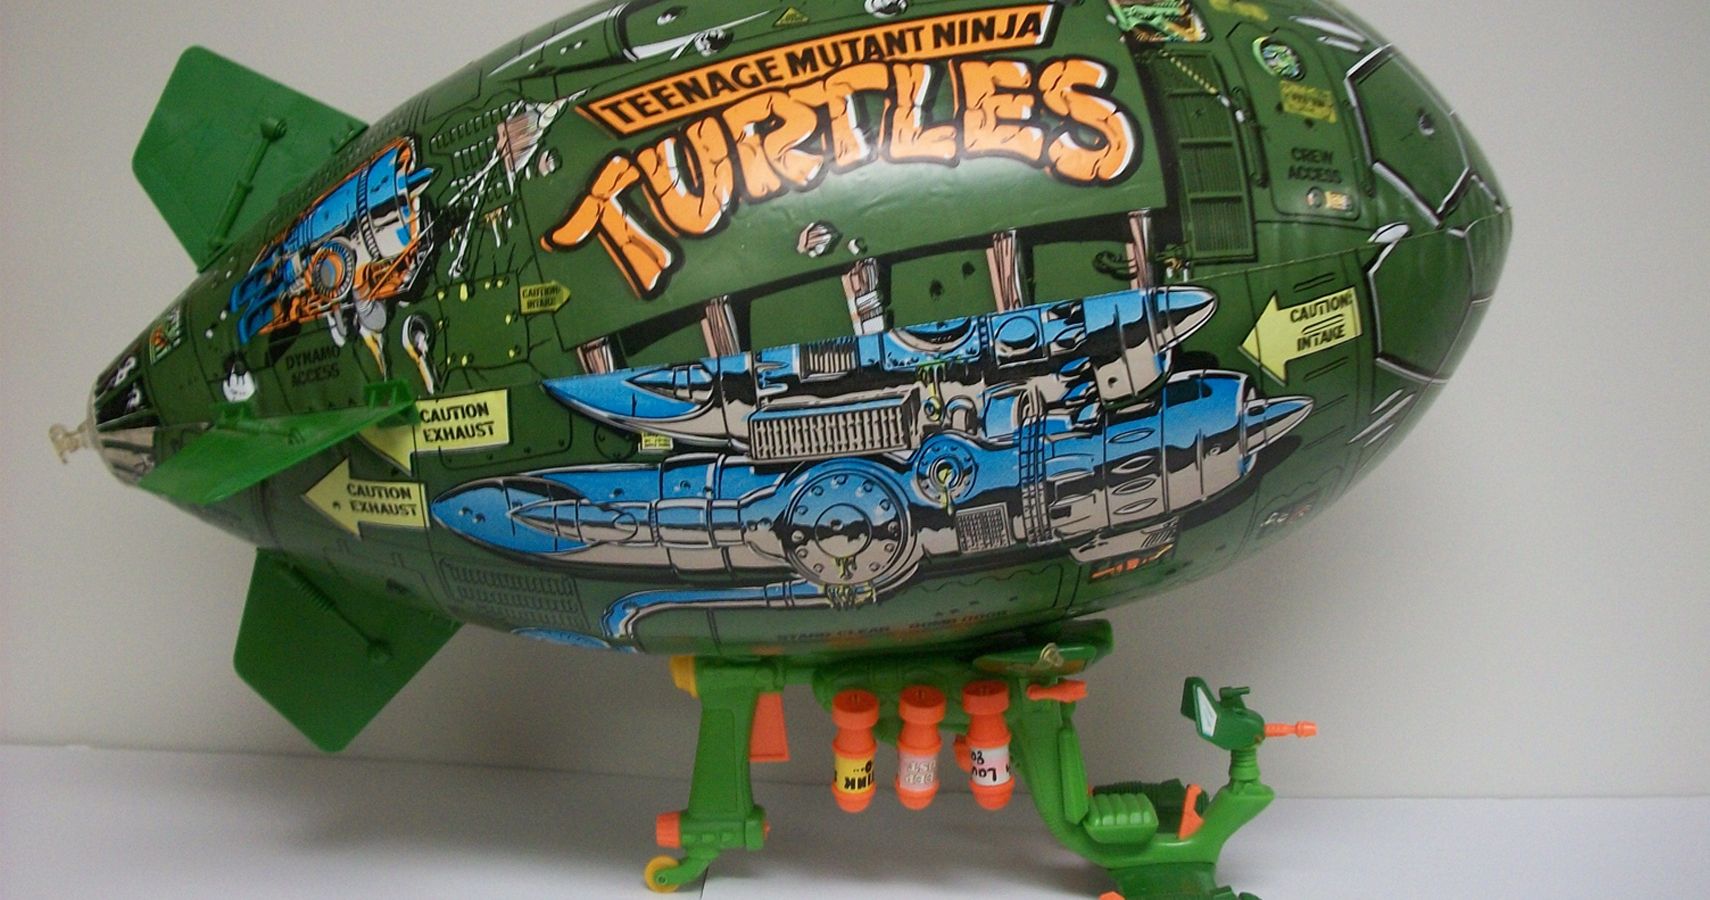 1990s ninja turtle toys